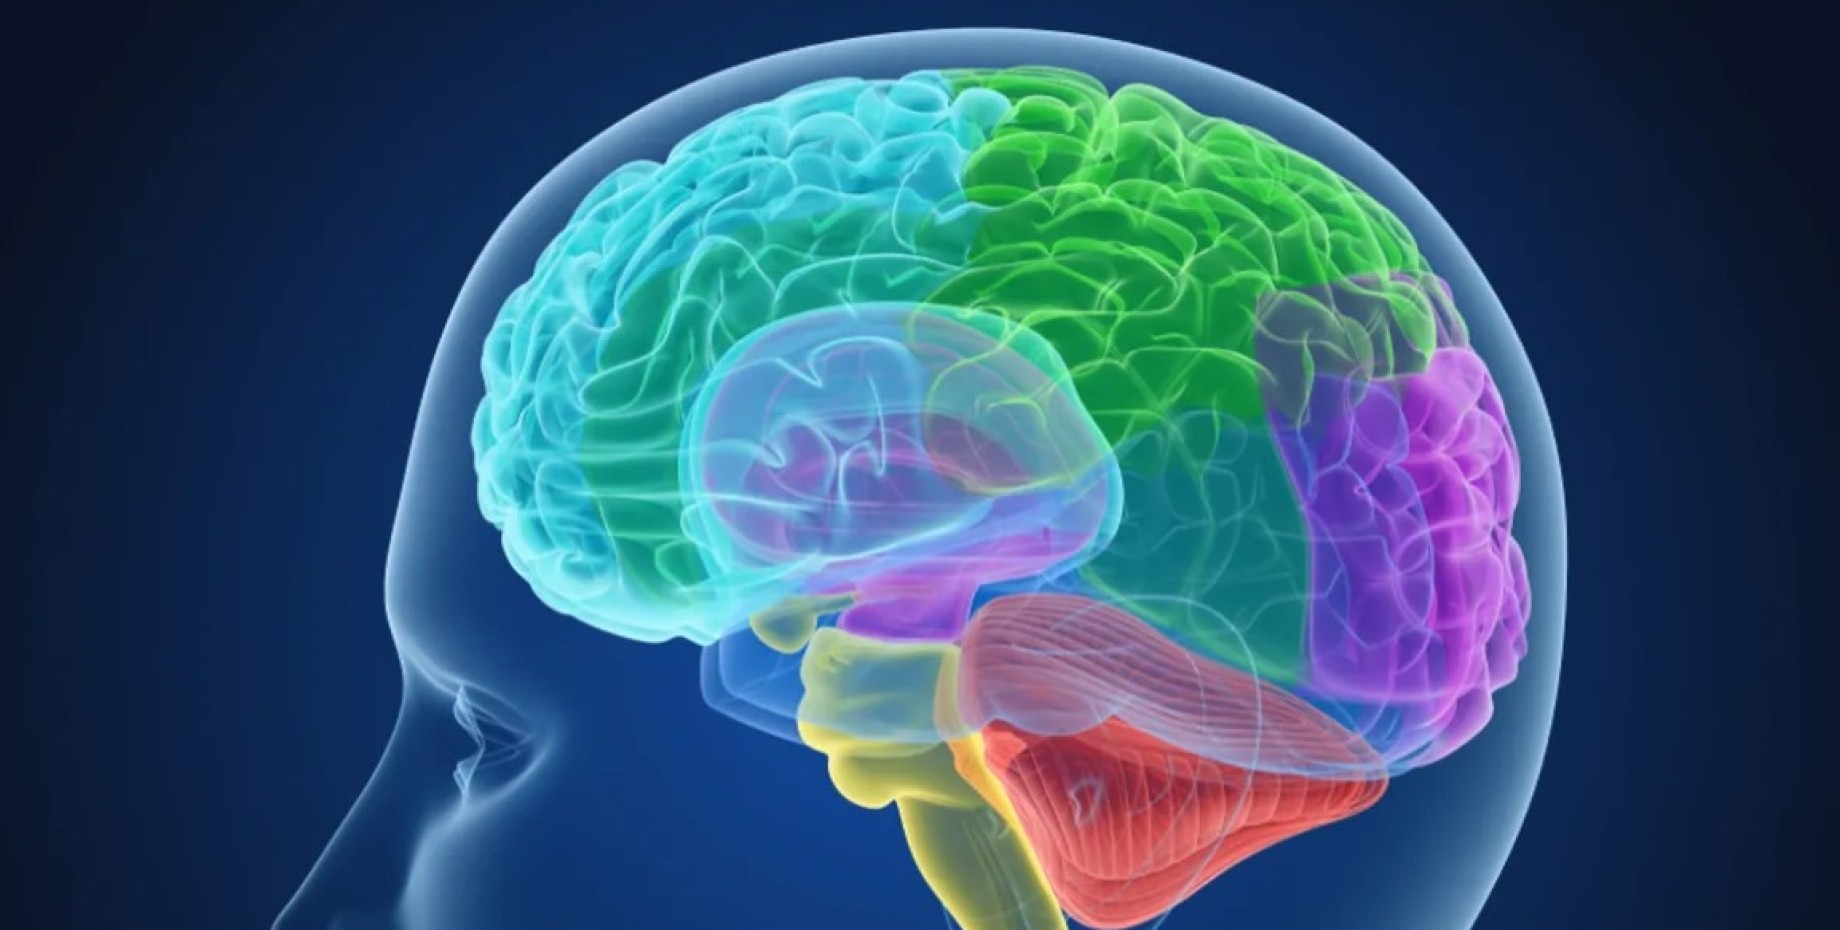 Brain h. Головной мозг. Изображение мозга.